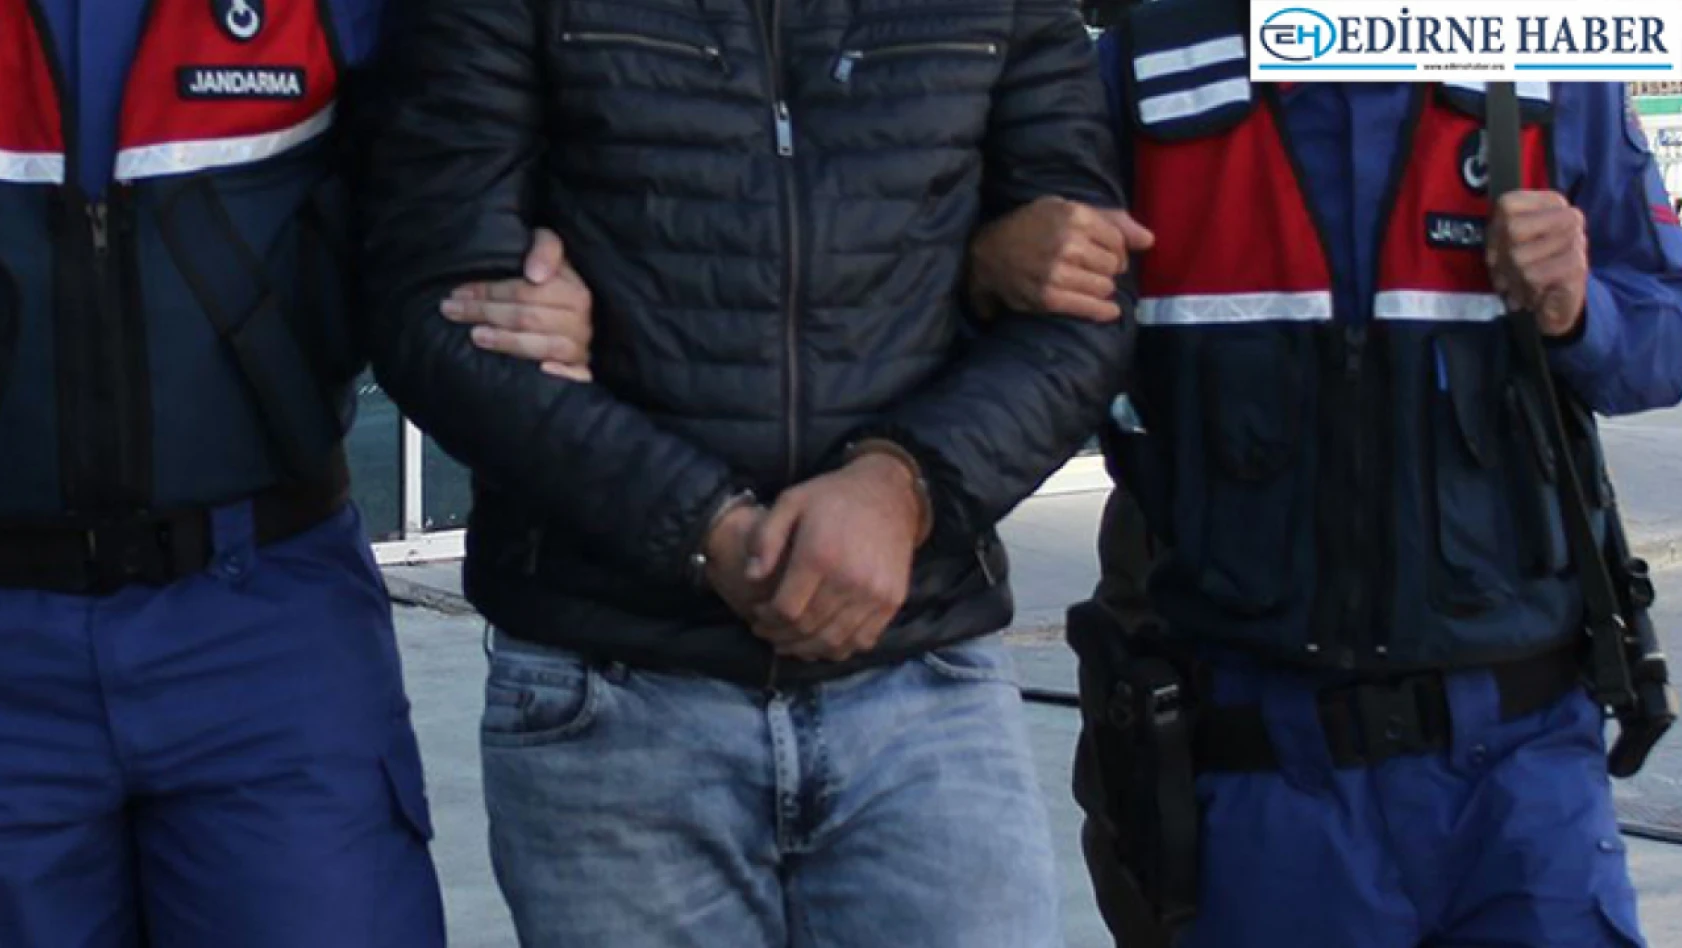 Edirne'de çeşitli suçlardan aranan 3 şüpheli yakalandı